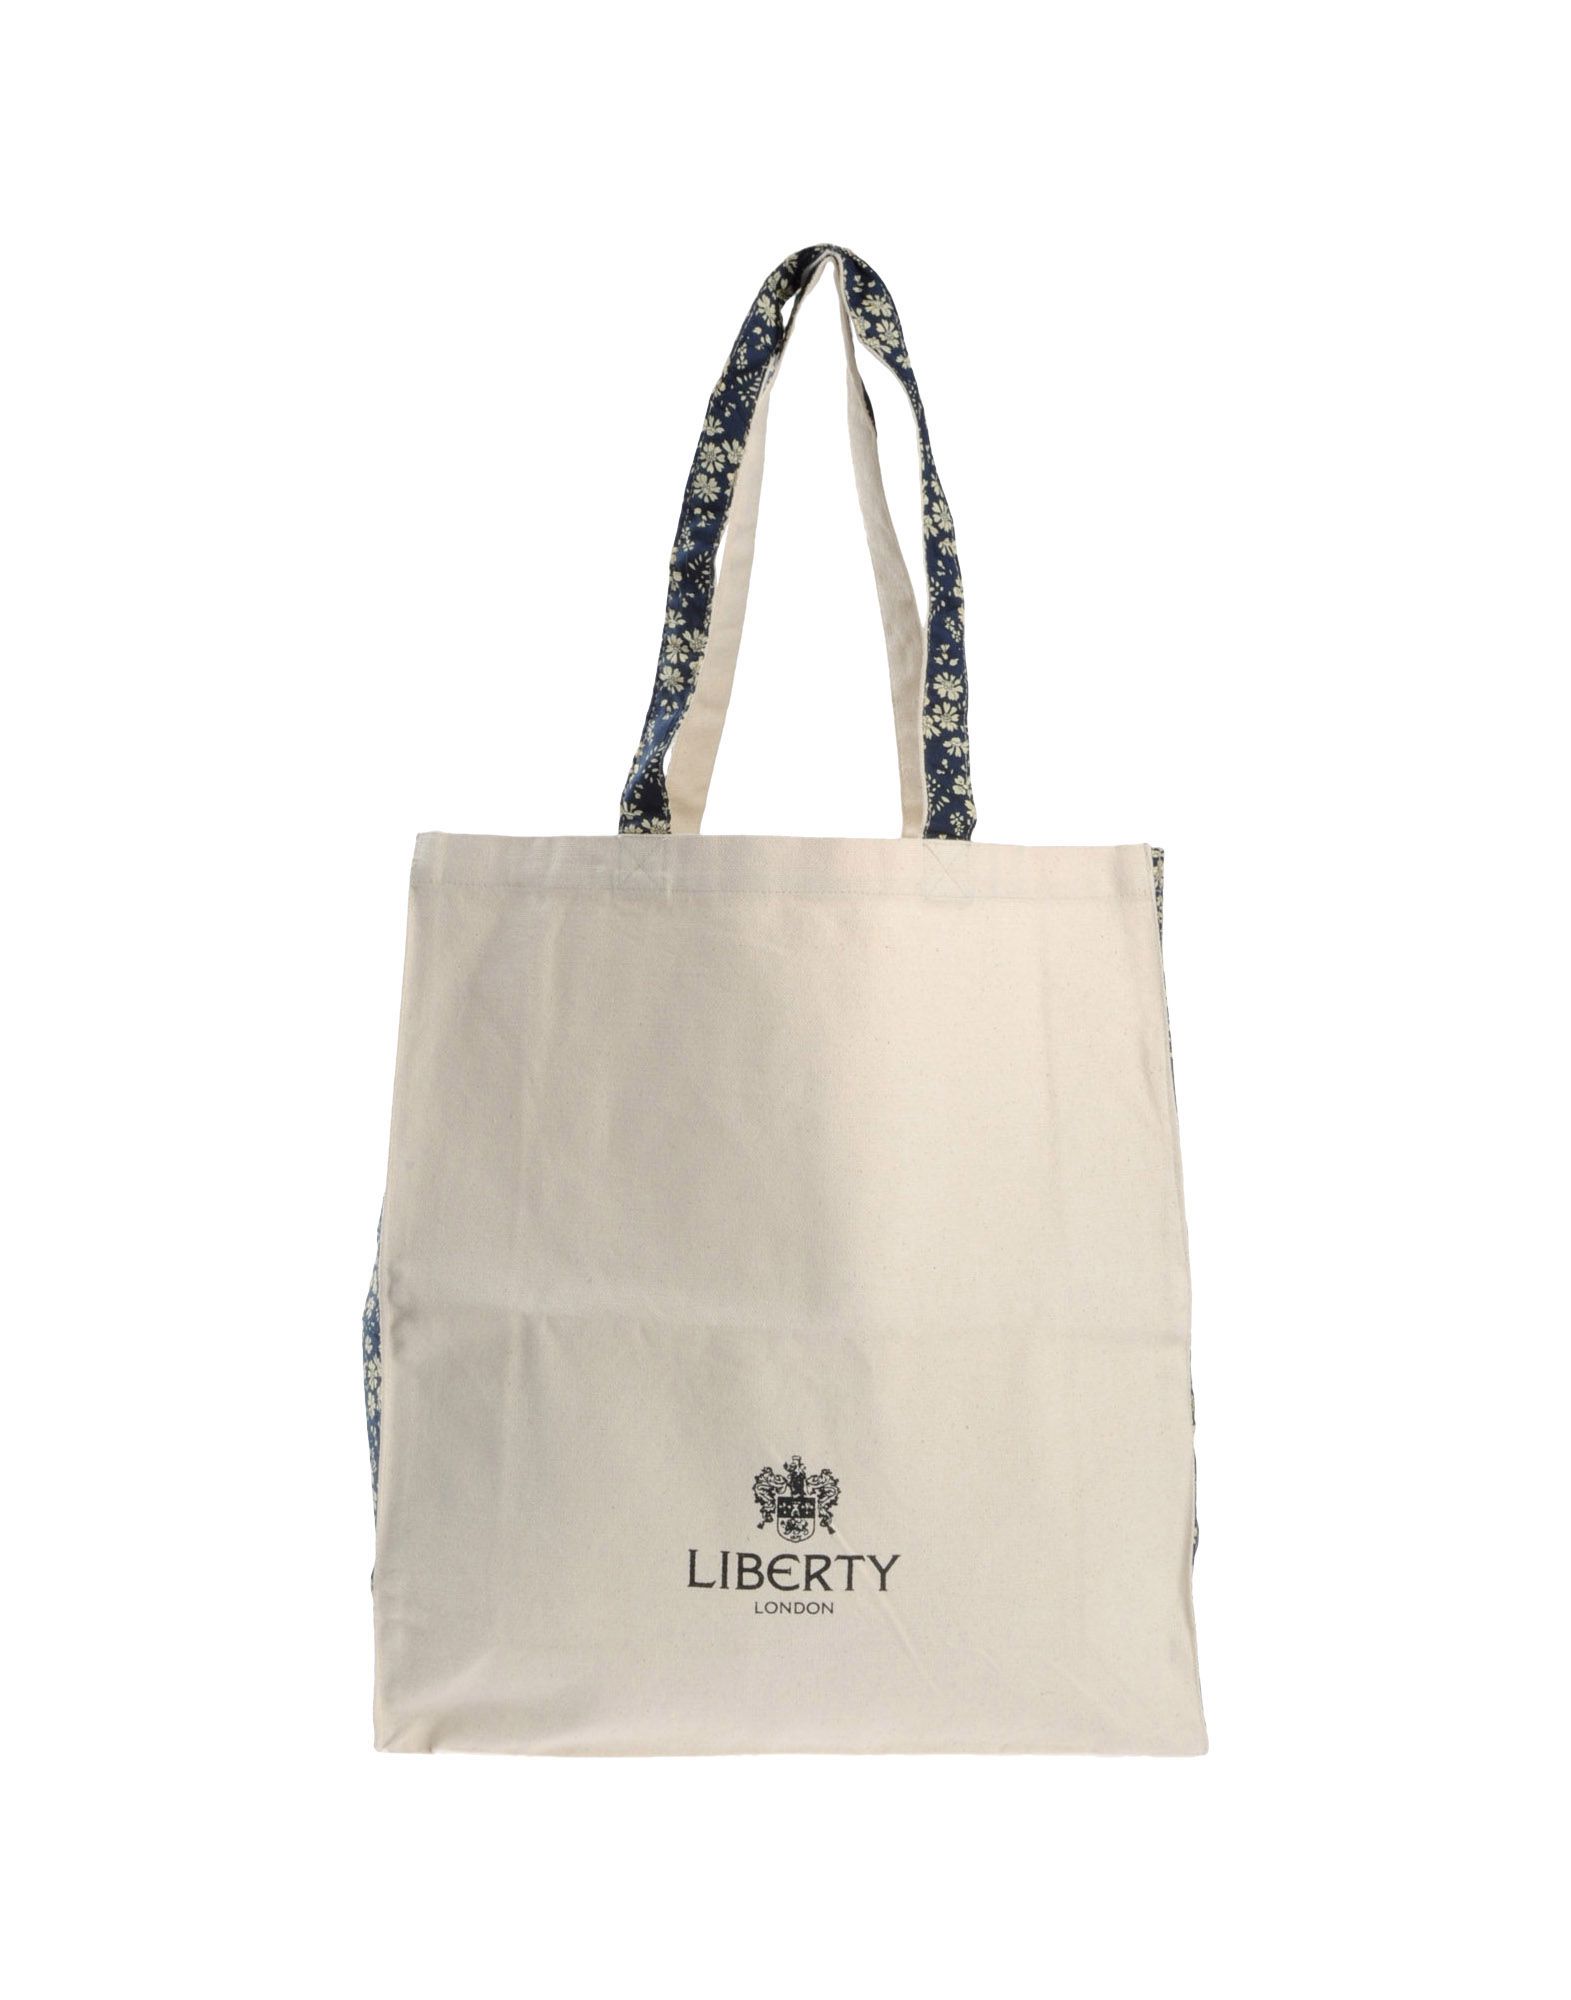 Foto liberty london bolsos grandes de tela
